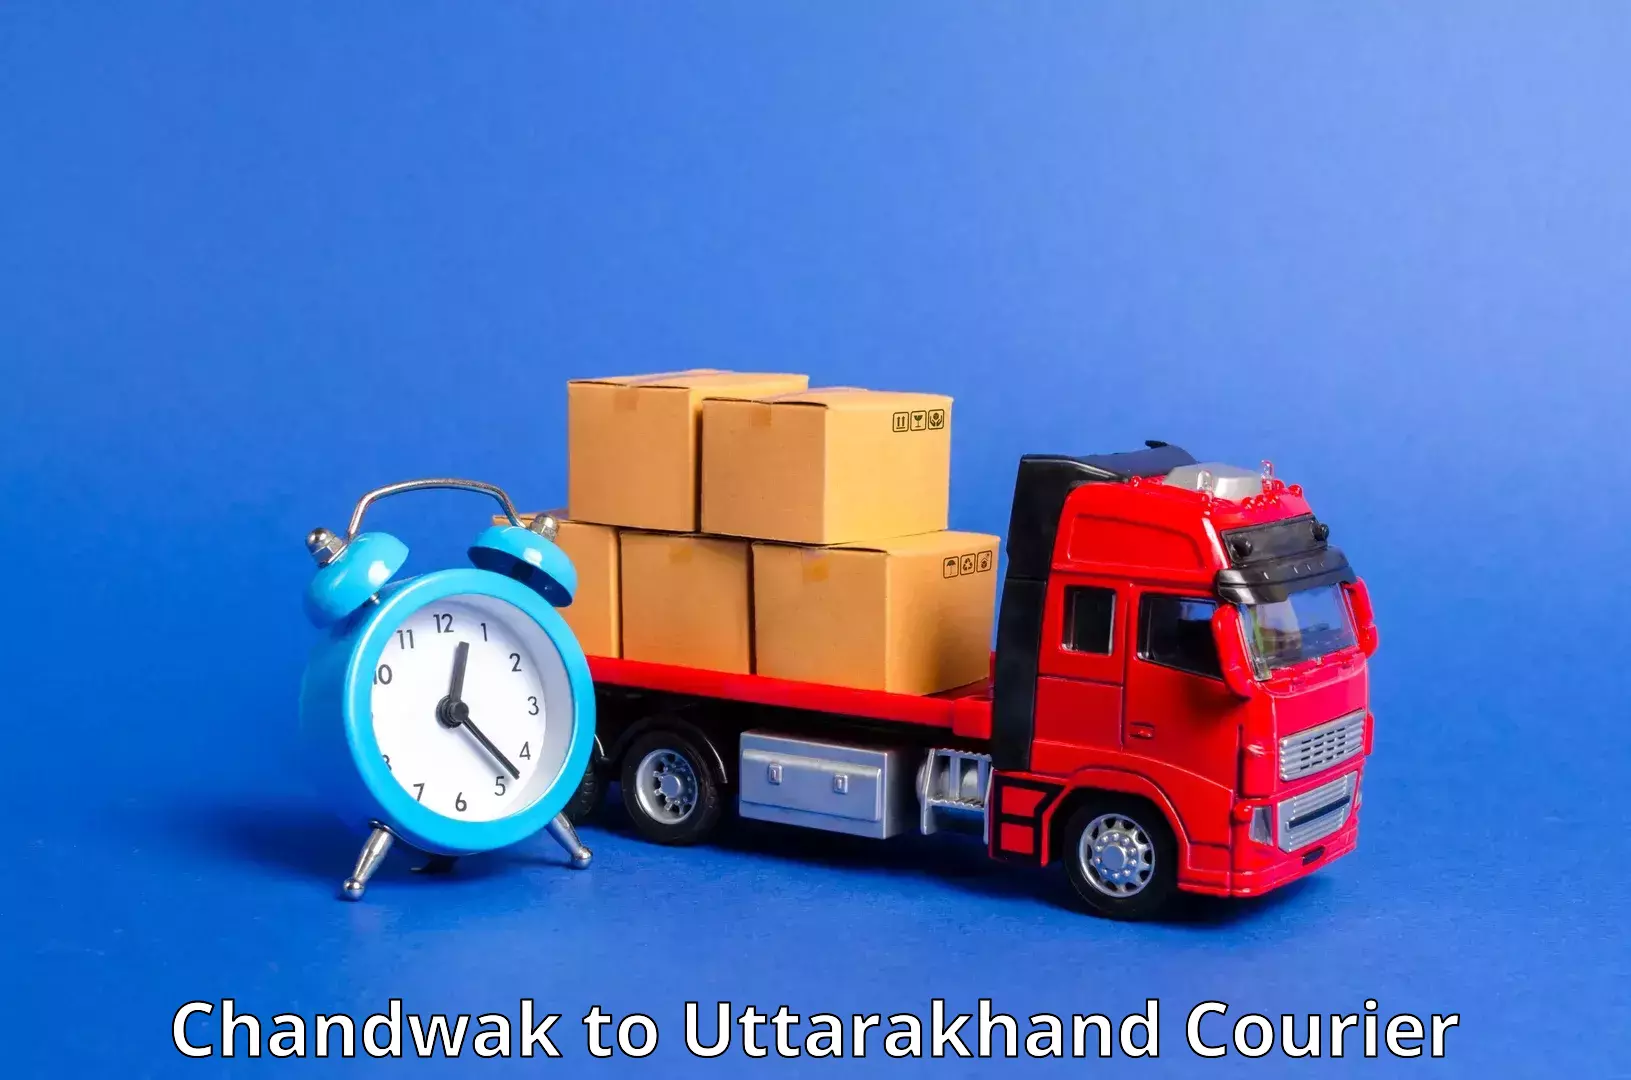 Urban courier service Chandwak to Rishikesh